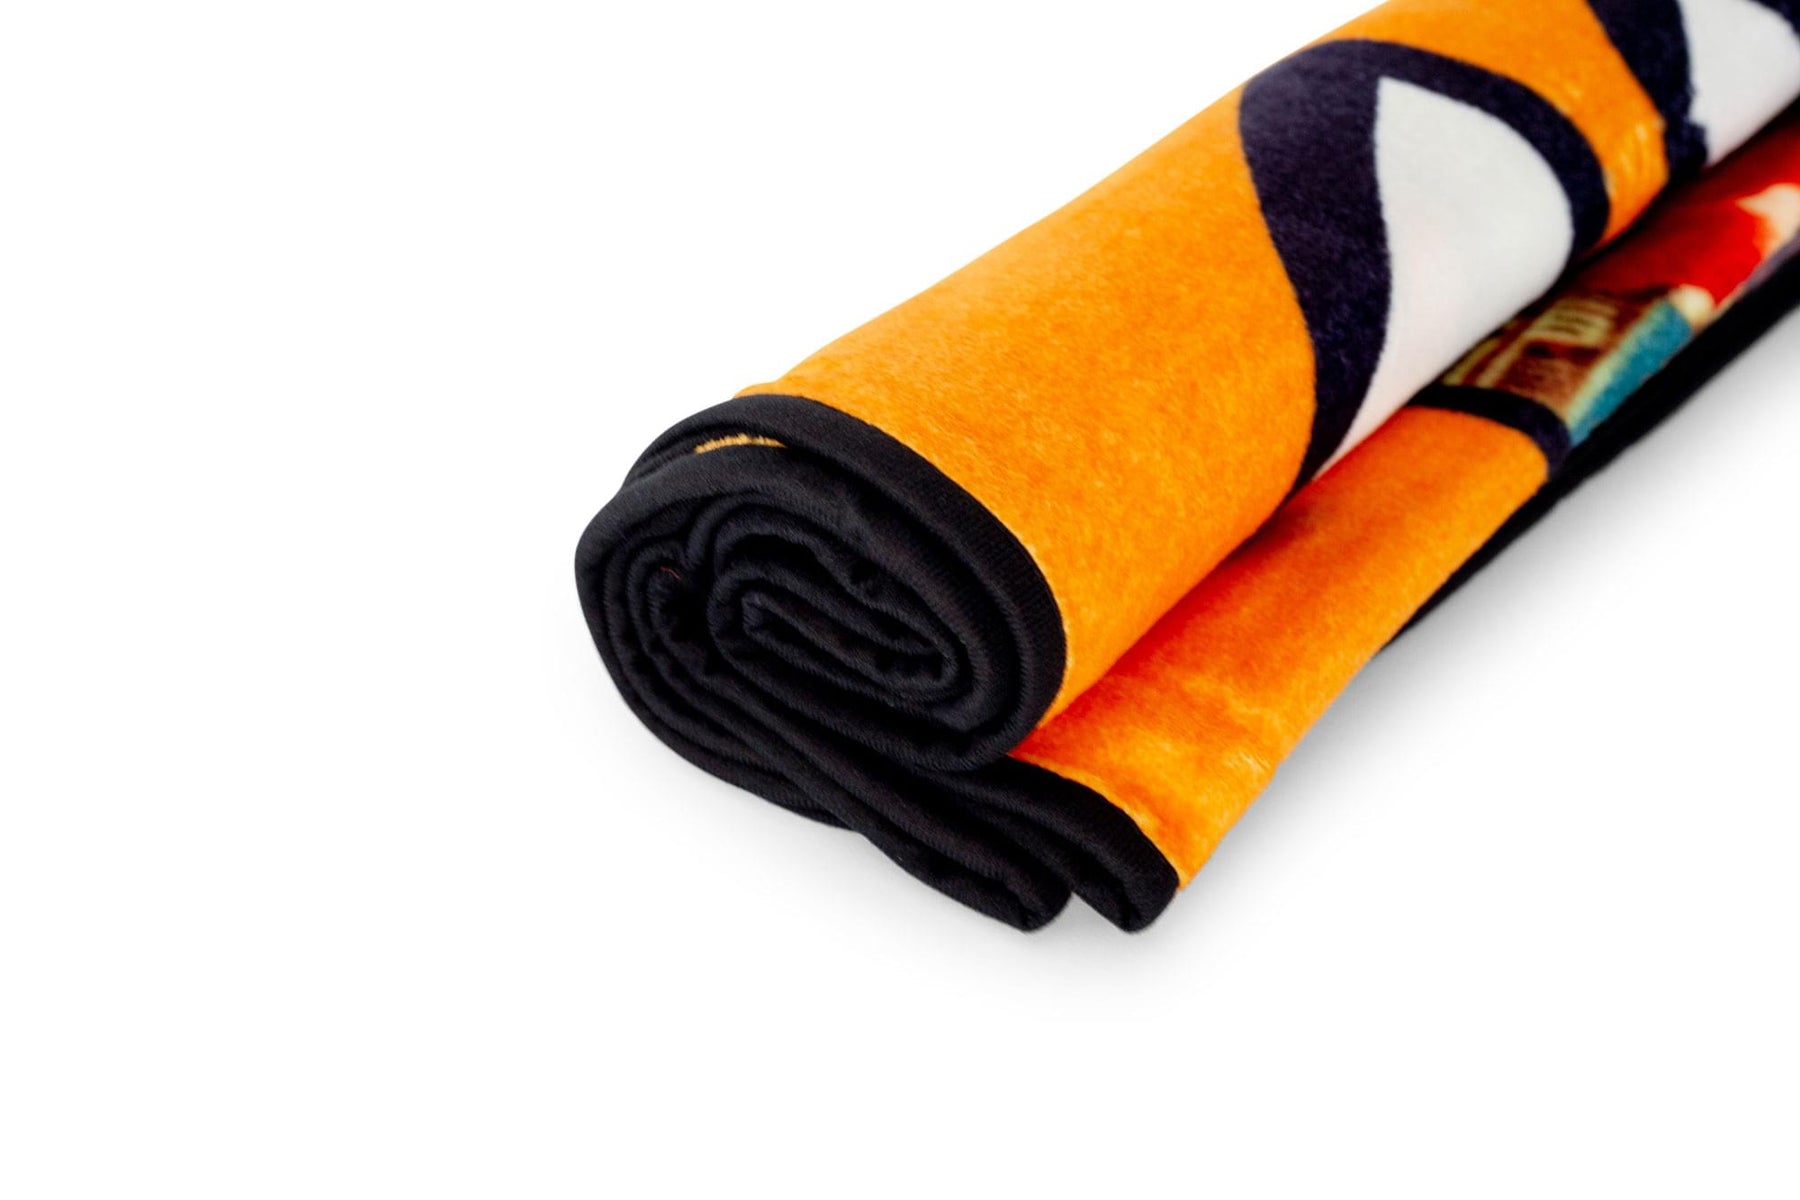 Ultraman Fleece Throw Blanket | Cozy Lightweight Blanket | 45 x 60 Inches